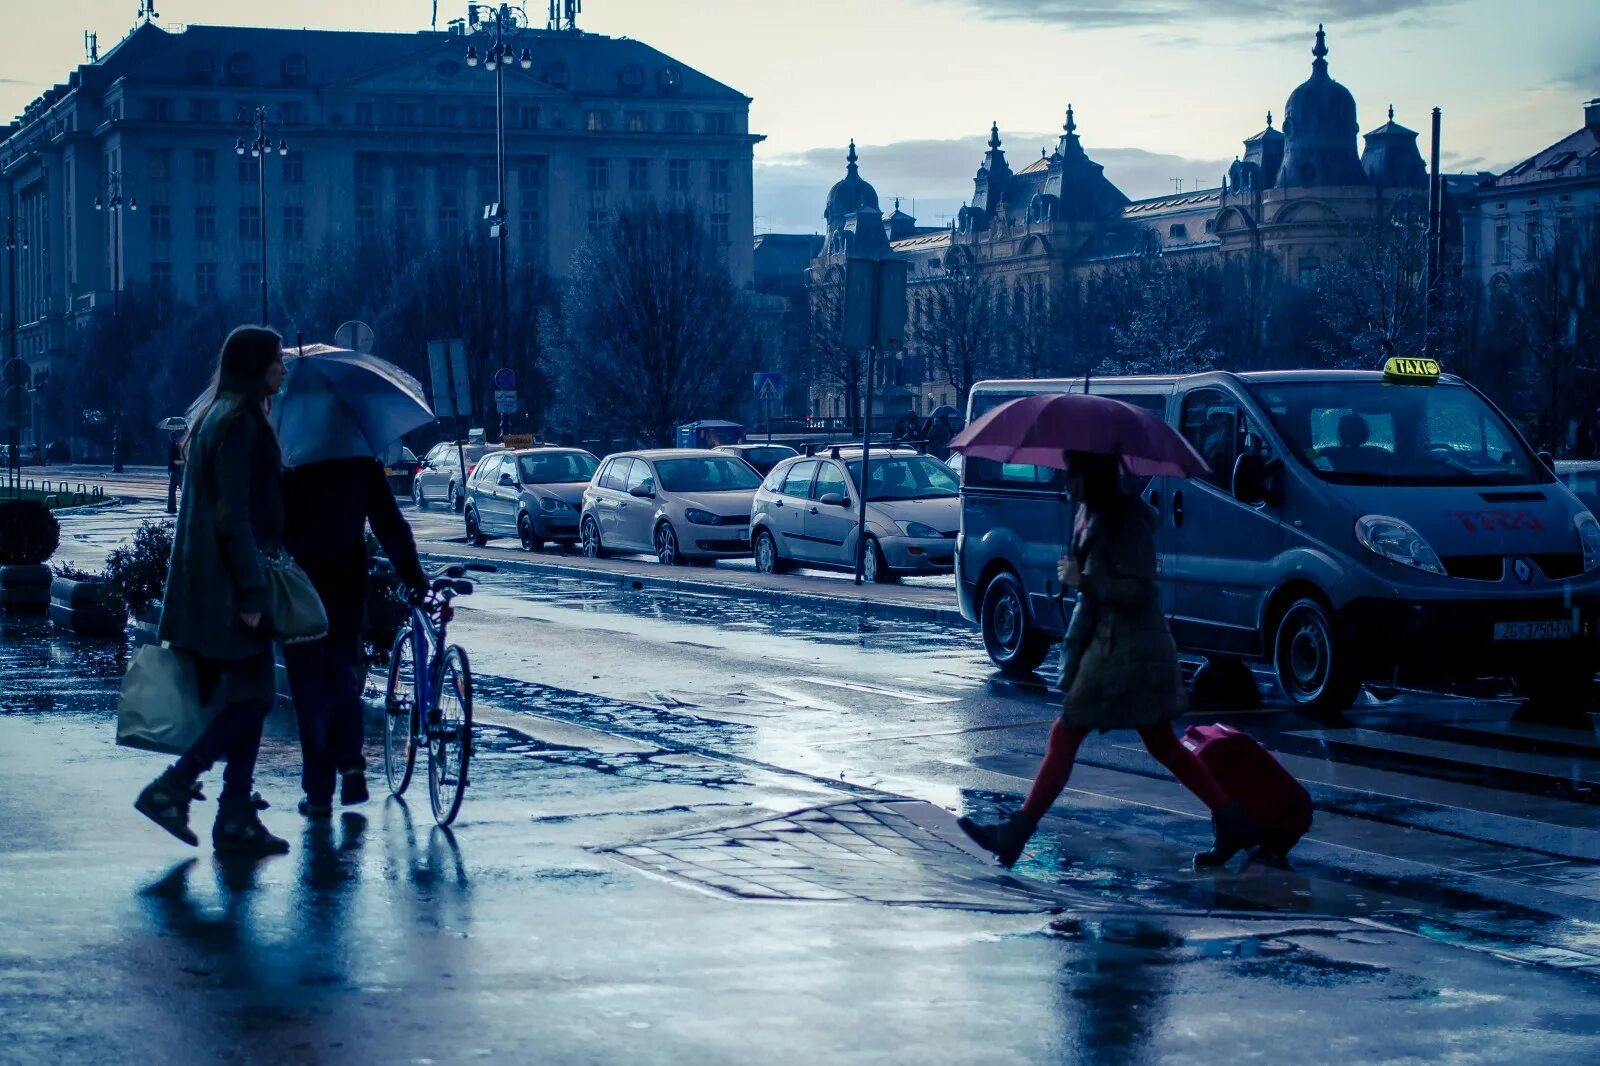 Включи станцию дождь. Авто под дождем силуэт. Станция дождливая. Велосипед дождь. Обои Спешка города.